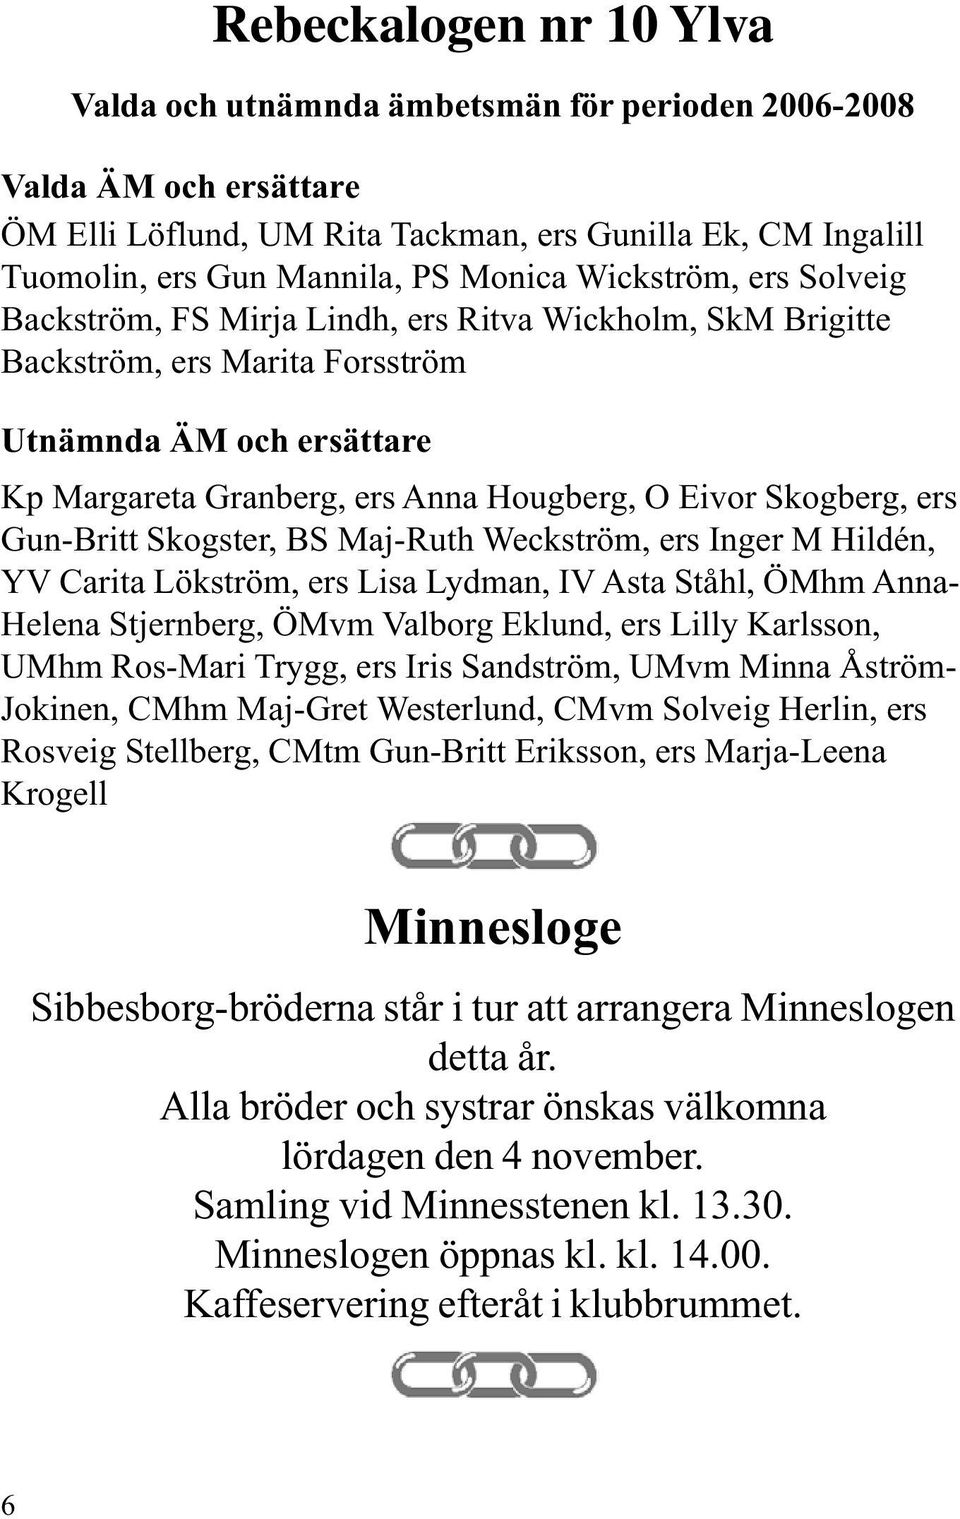 Skogberg, ers Gun-Britt Skogster, BS Maj-Ruth Weckström, ers Inger M Hildén, YV Carita Lökström, ers Lisa Lydman, IV Asta Ståhl, ÖMhm Anna- Helena Stjernberg, ÖMvm Valborg Eklund, ers Lilly Karlsson,